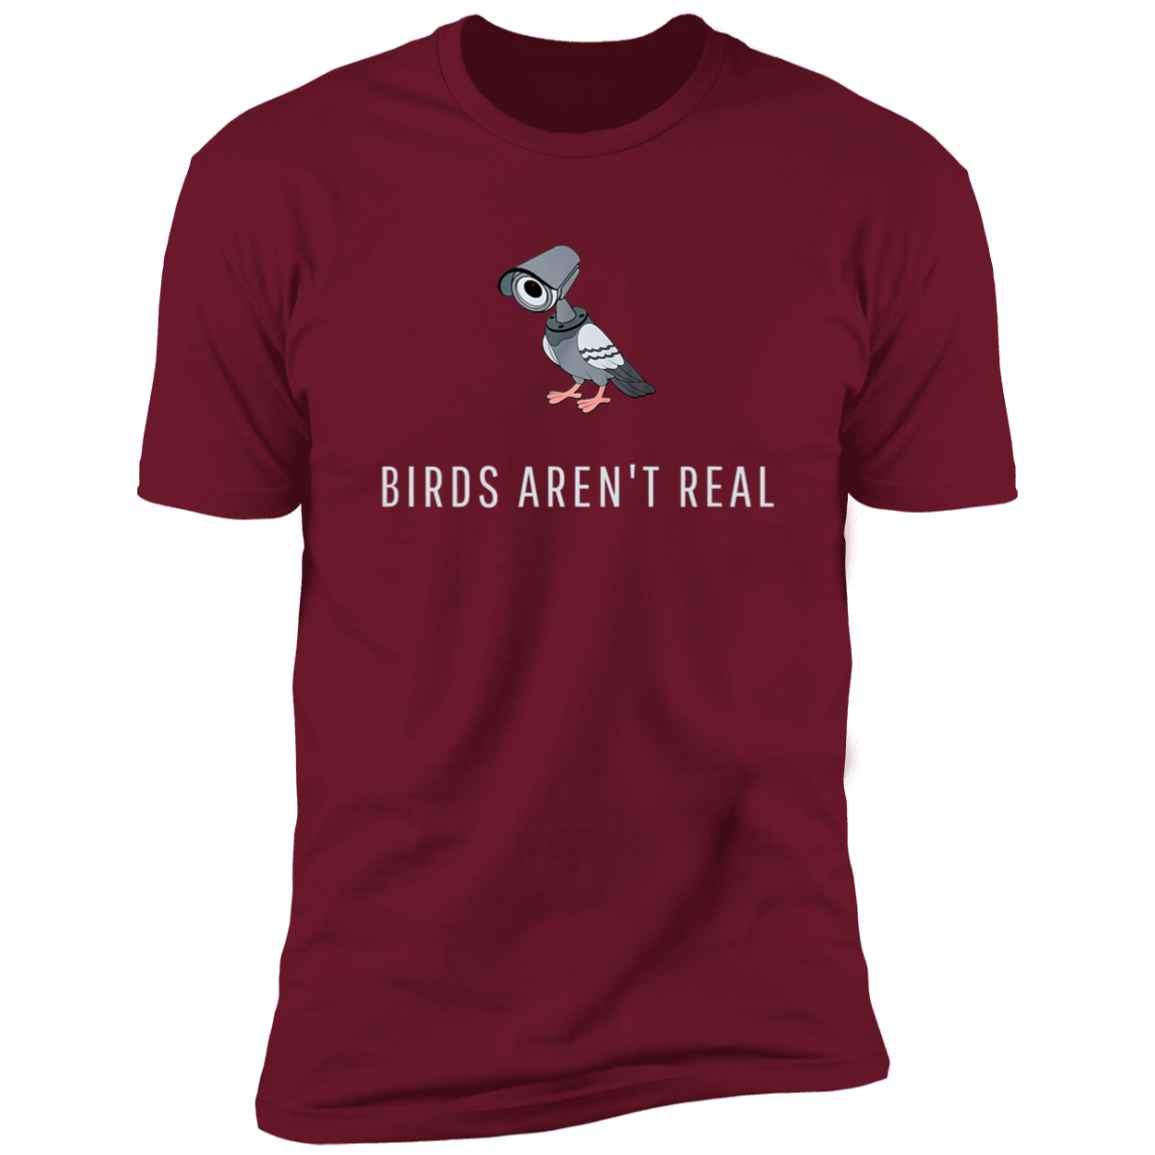 Birds aren’t real Premium Short Sleeve Tee